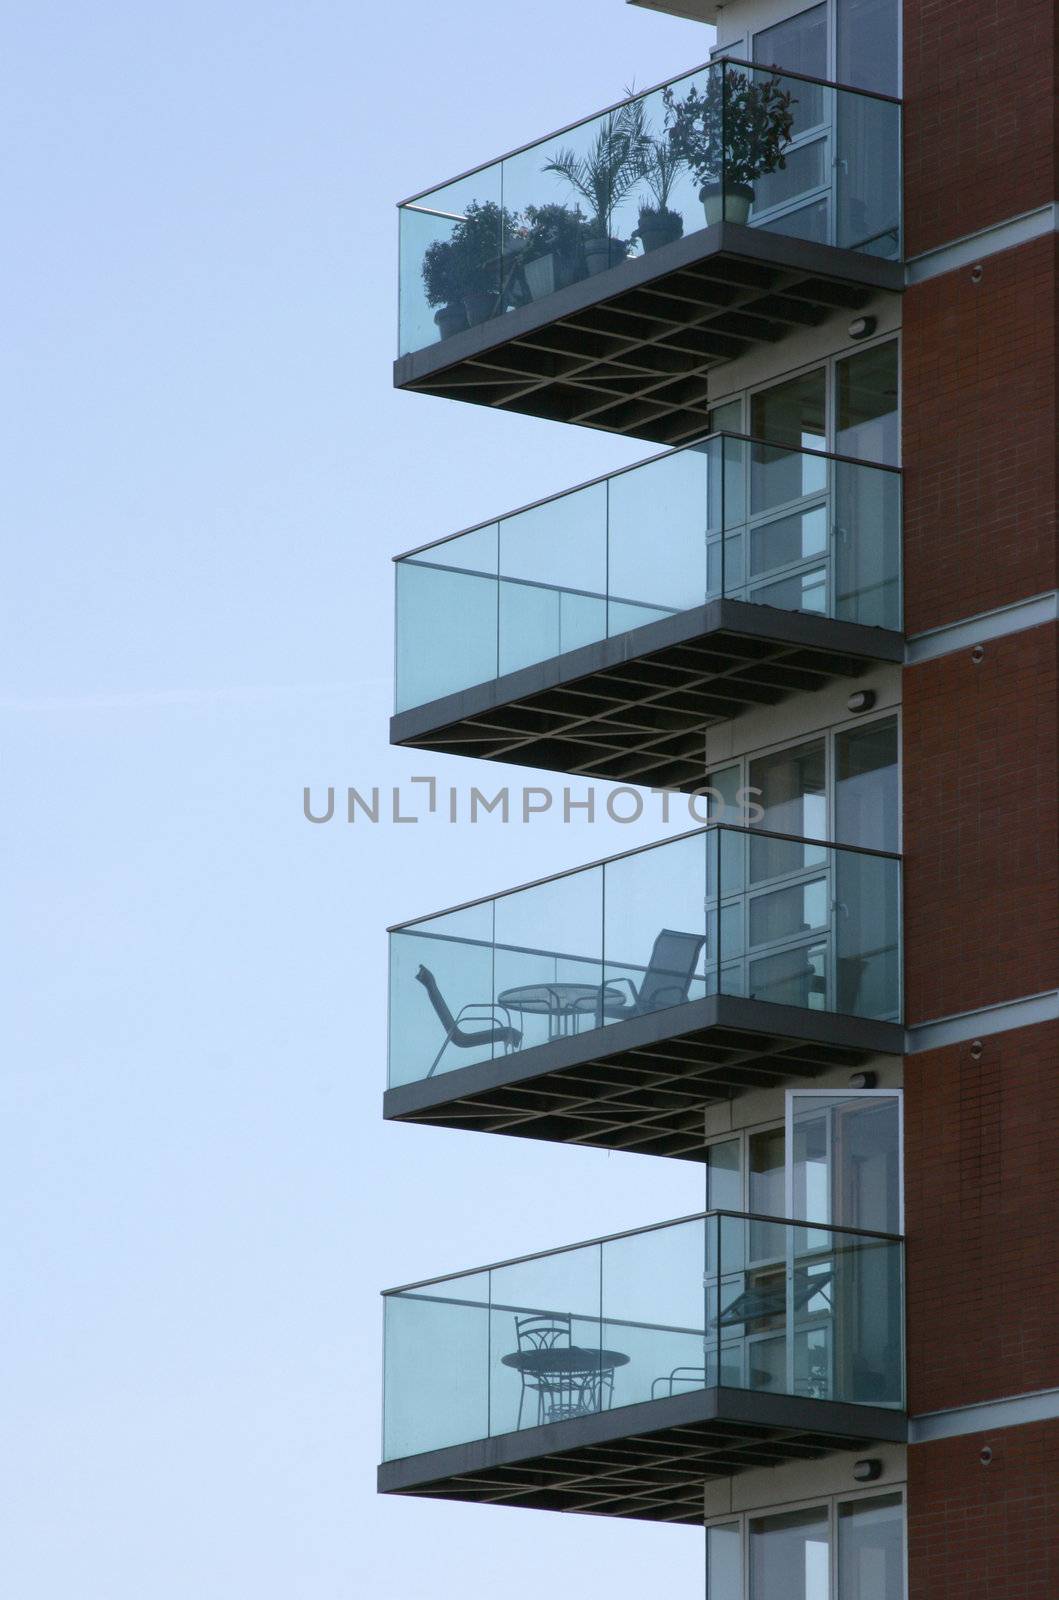 Building with empty balconies, vertical